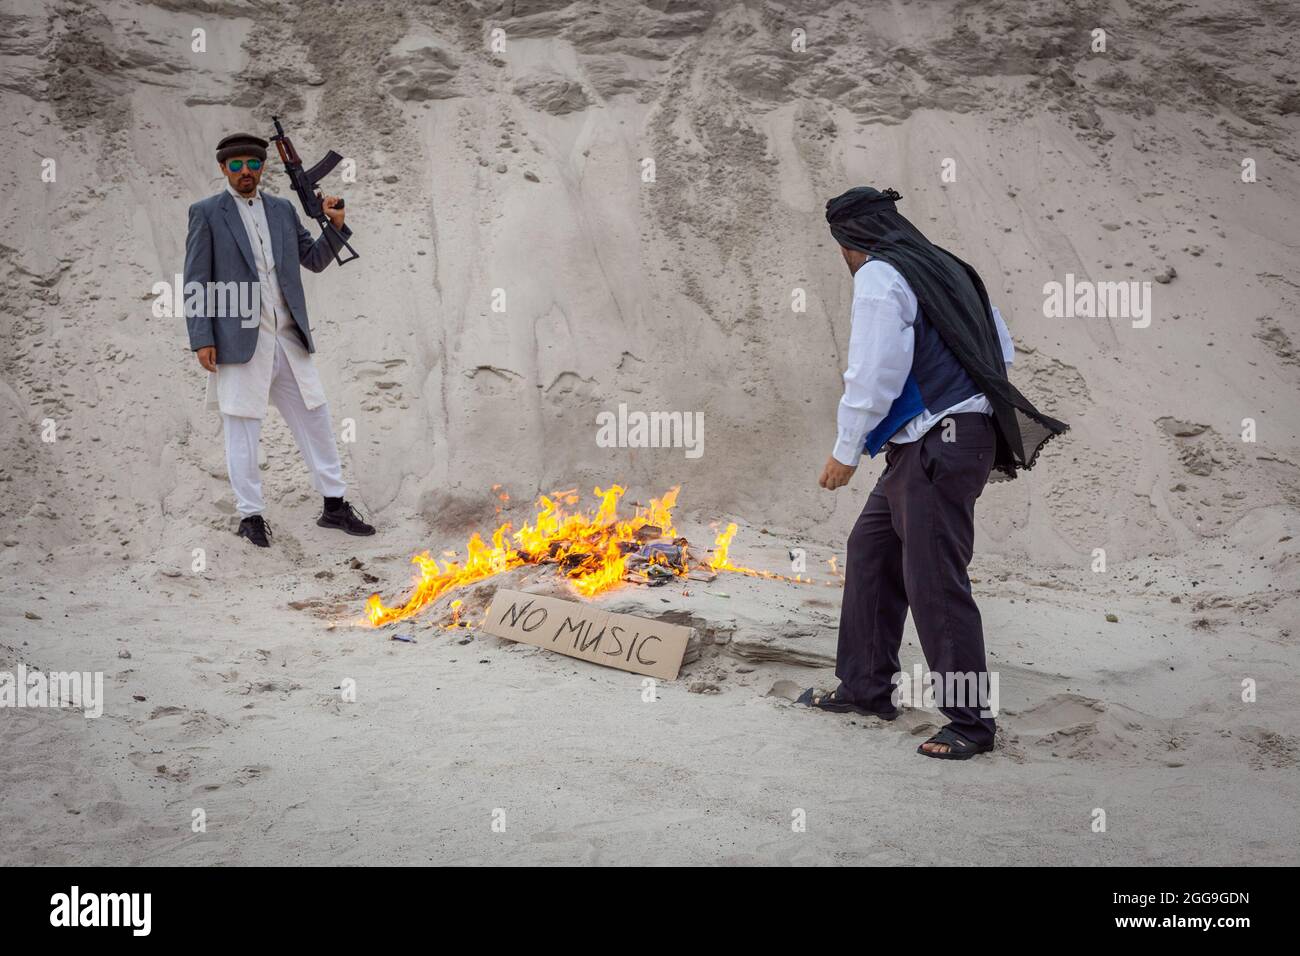 Afghanische Terroristen zerstören die Musik. Sie verbrennen musikalische Vorräte. Sie verbieten Musik in Afghanistan. Die Taliban machen Musik zum Feuer. Stockfoto